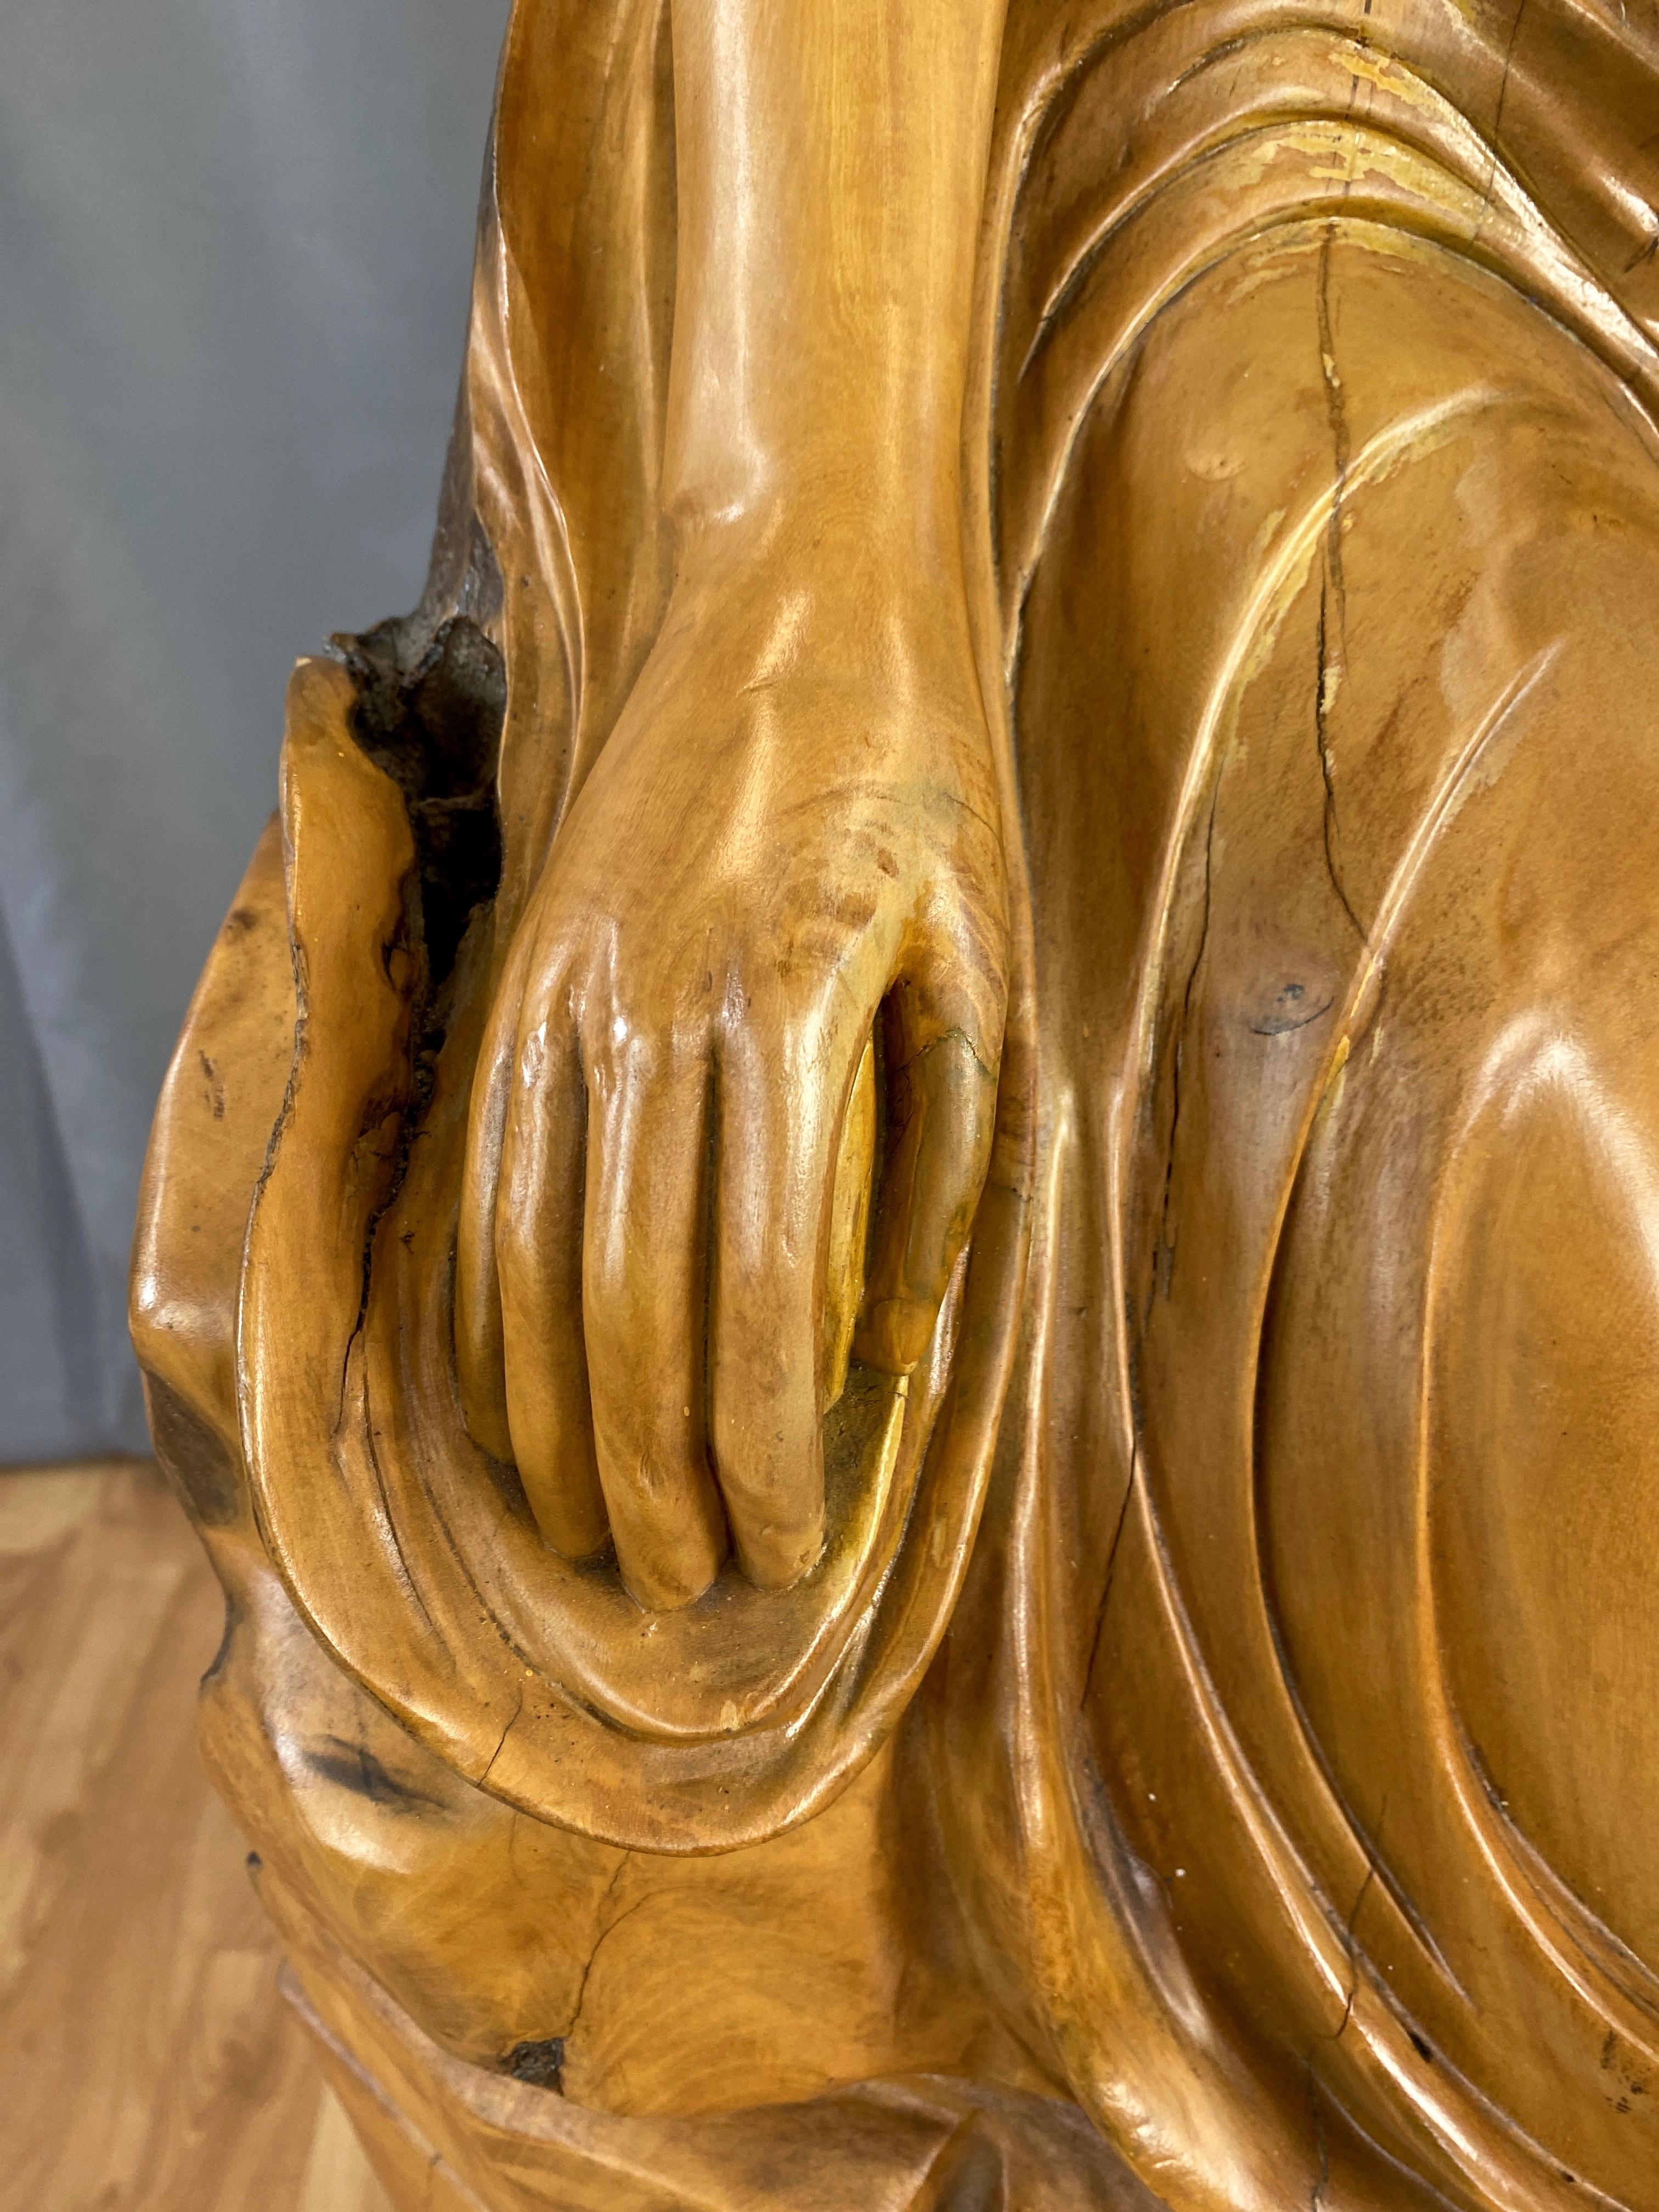 Large Hand-Carved Cypress Knee Figural Sculpture After Botticelli's Venus, 1970s For Sale 4